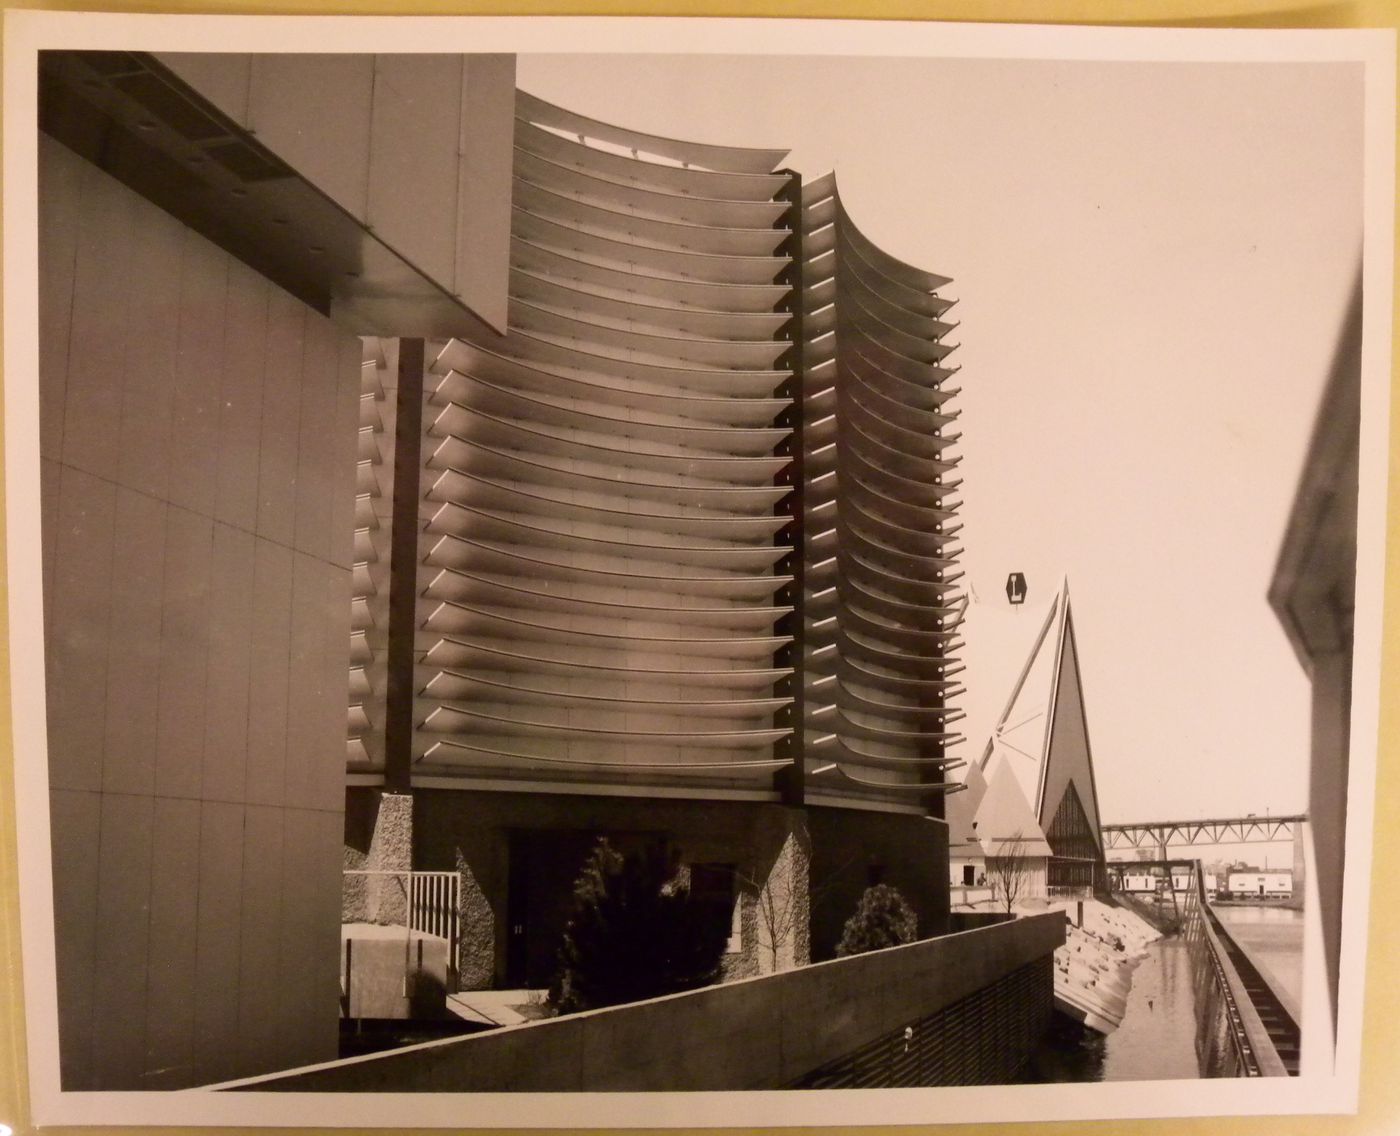 Back view of the Canadian Pacific-Cominco Pavilion, Expo 67, Montréal, Québec